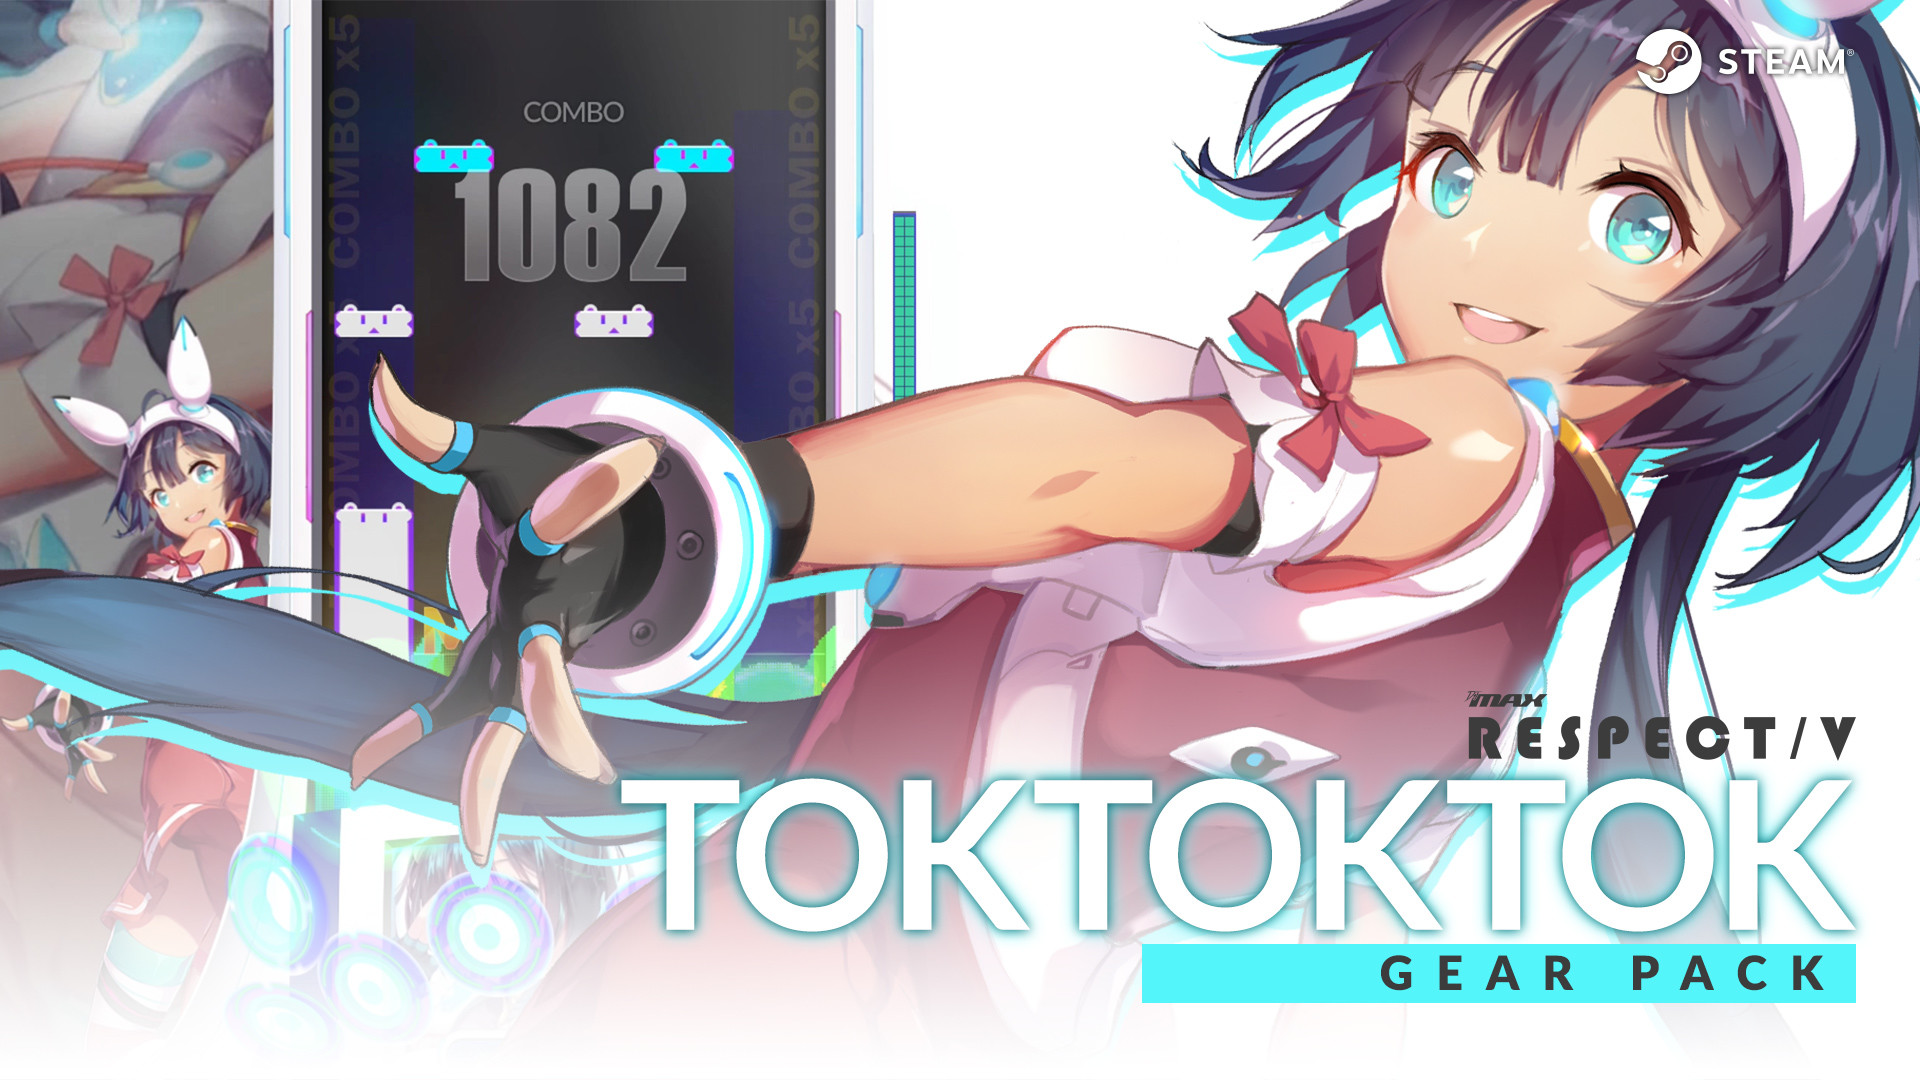 DJMAX RESPECT V - Tok! Tok! Tok! Gear Pack Featured Screenshot #1